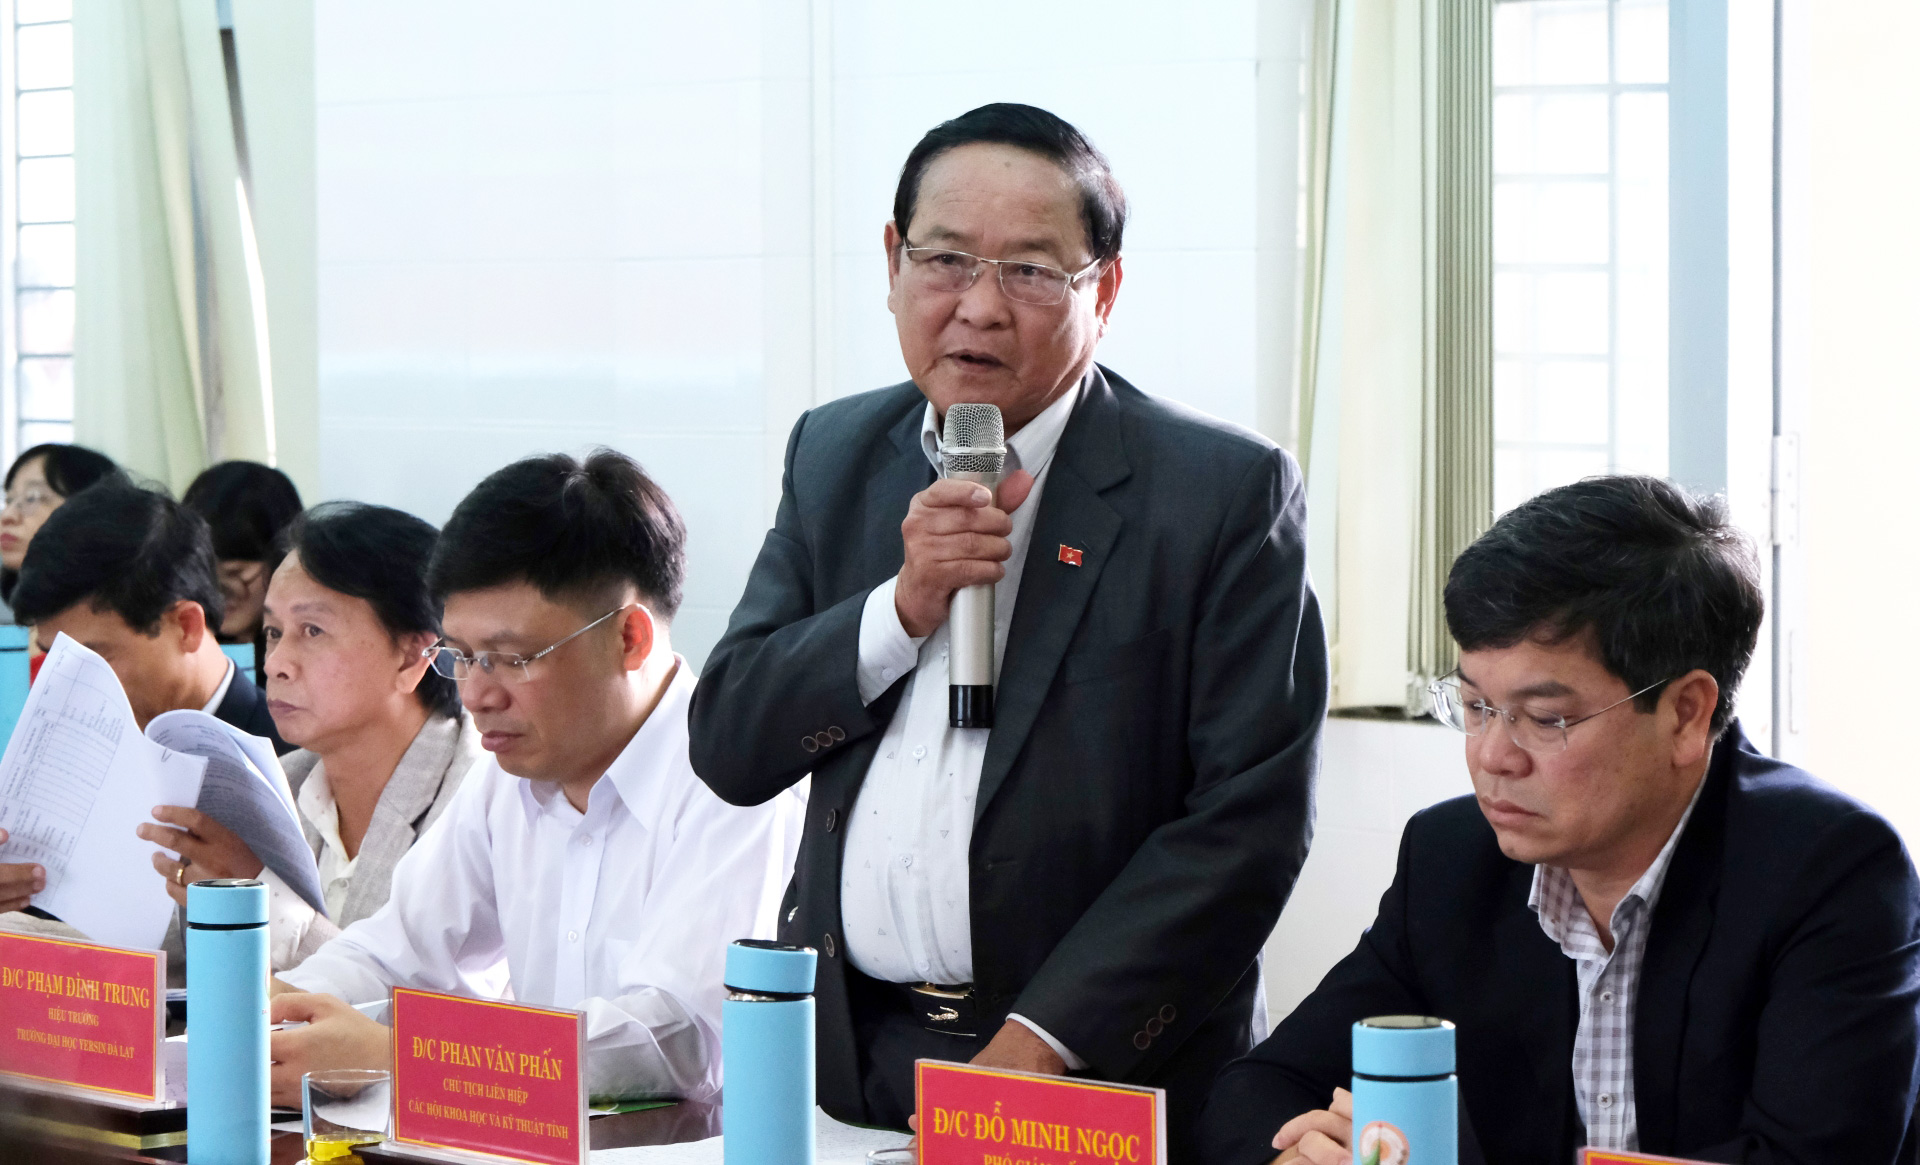 Đồng chí Phan Văn Phấn - Chủ tịch Liên hiệp các Hội Khoa học và kỹ thuật tỉnh nêu vấn đề về công tác đào tạo nguồn nhân lực trẻ